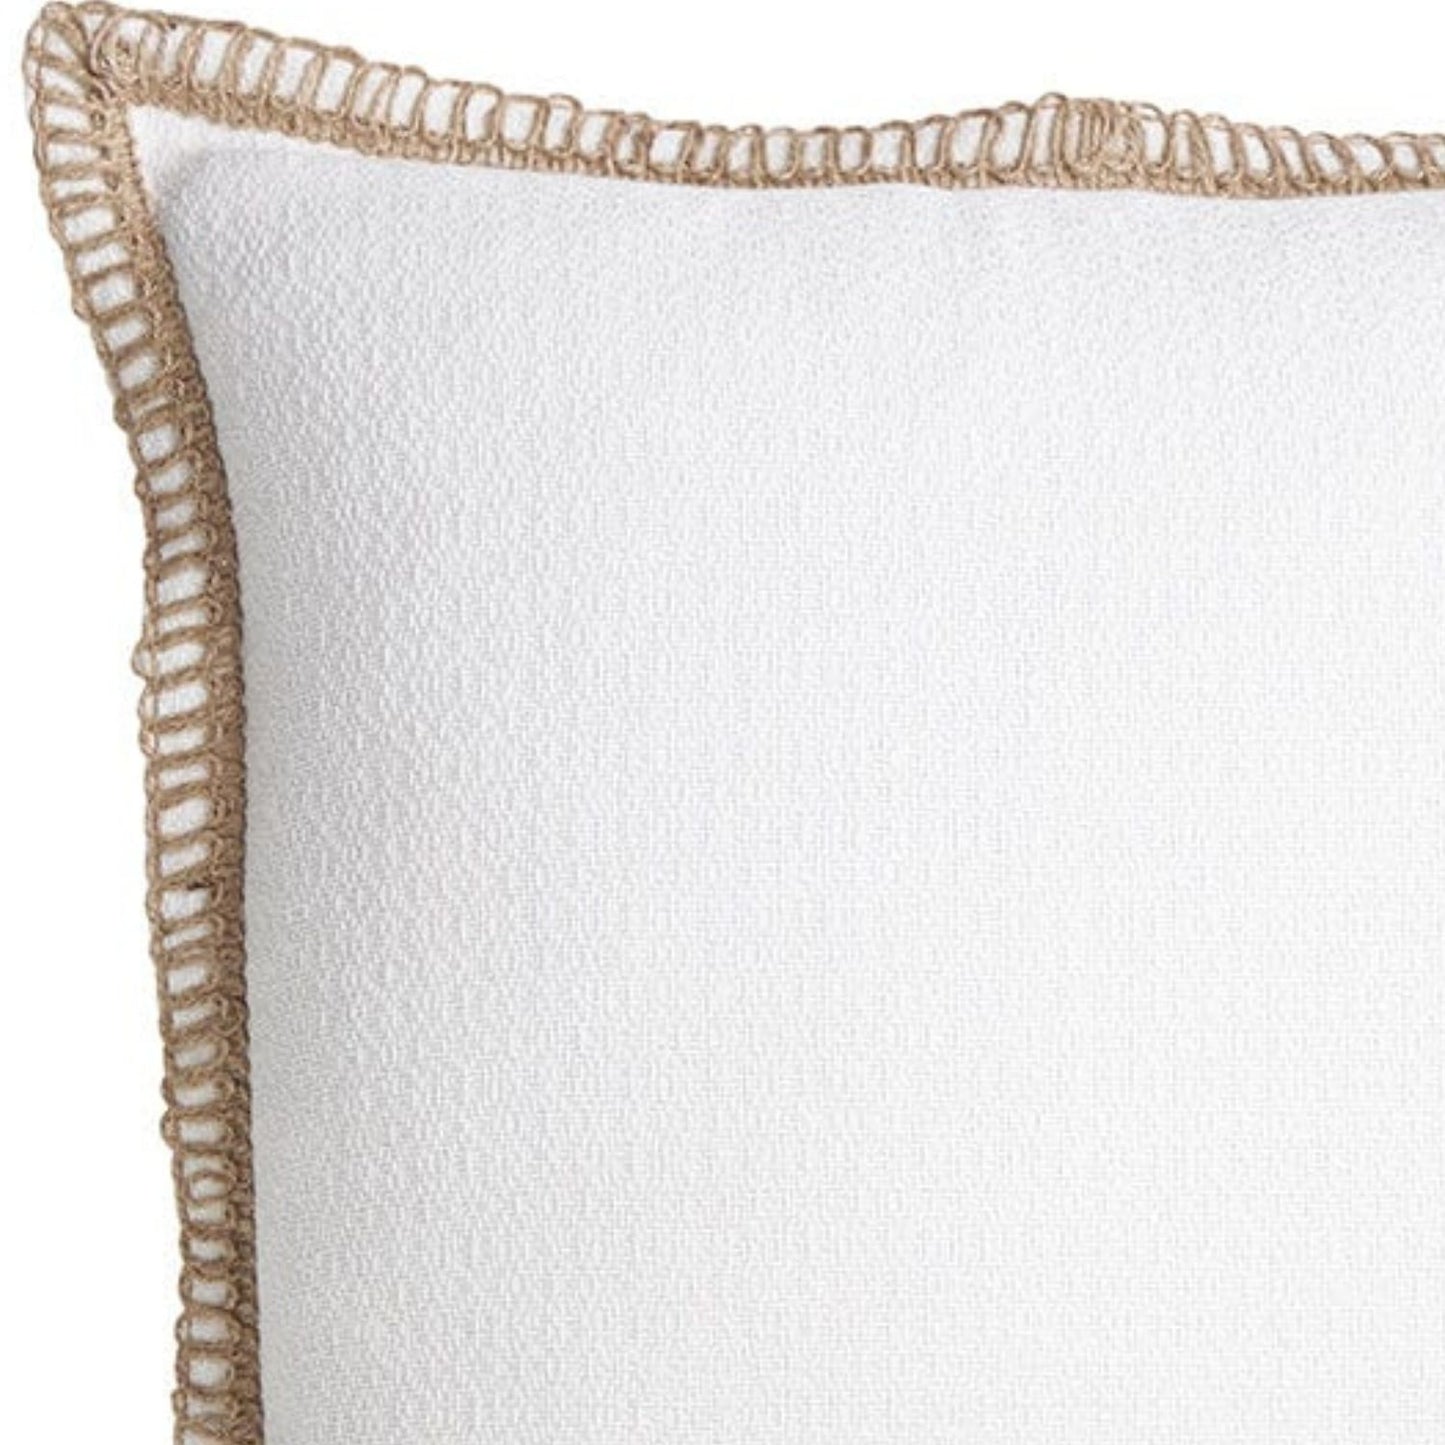 Coastal cushion white with rope style edging 50x50